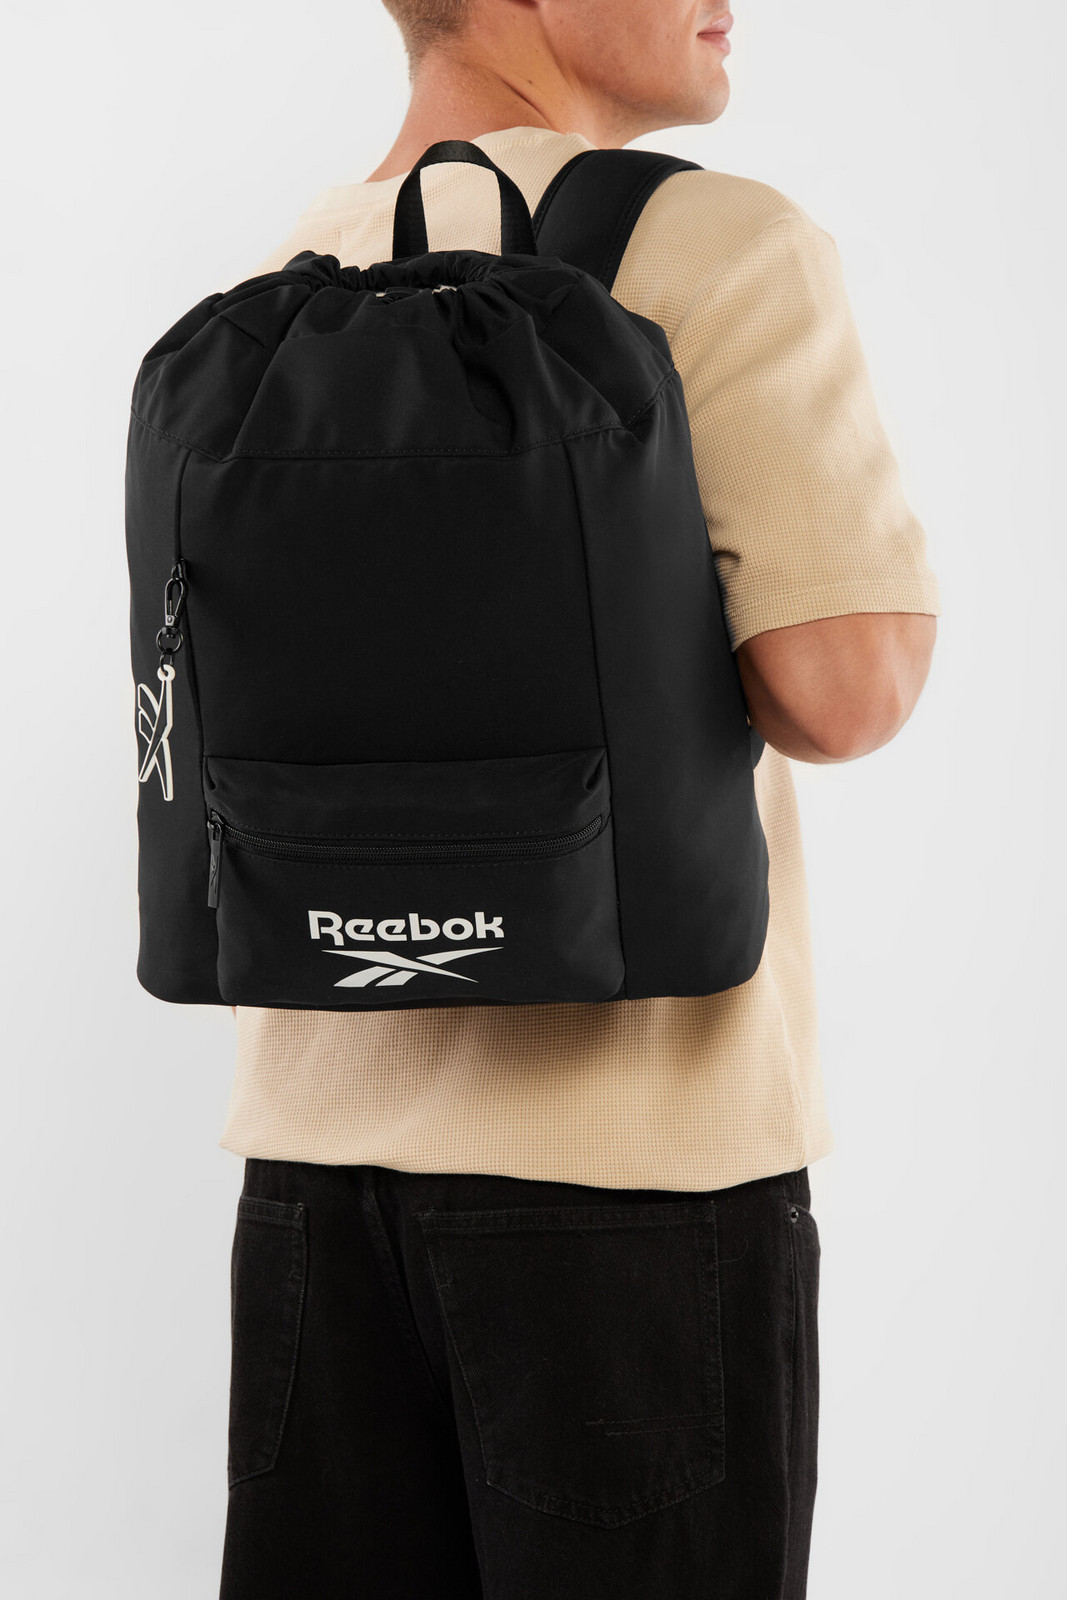 Batohy a tašky Reebok RBK-037-CCC-05